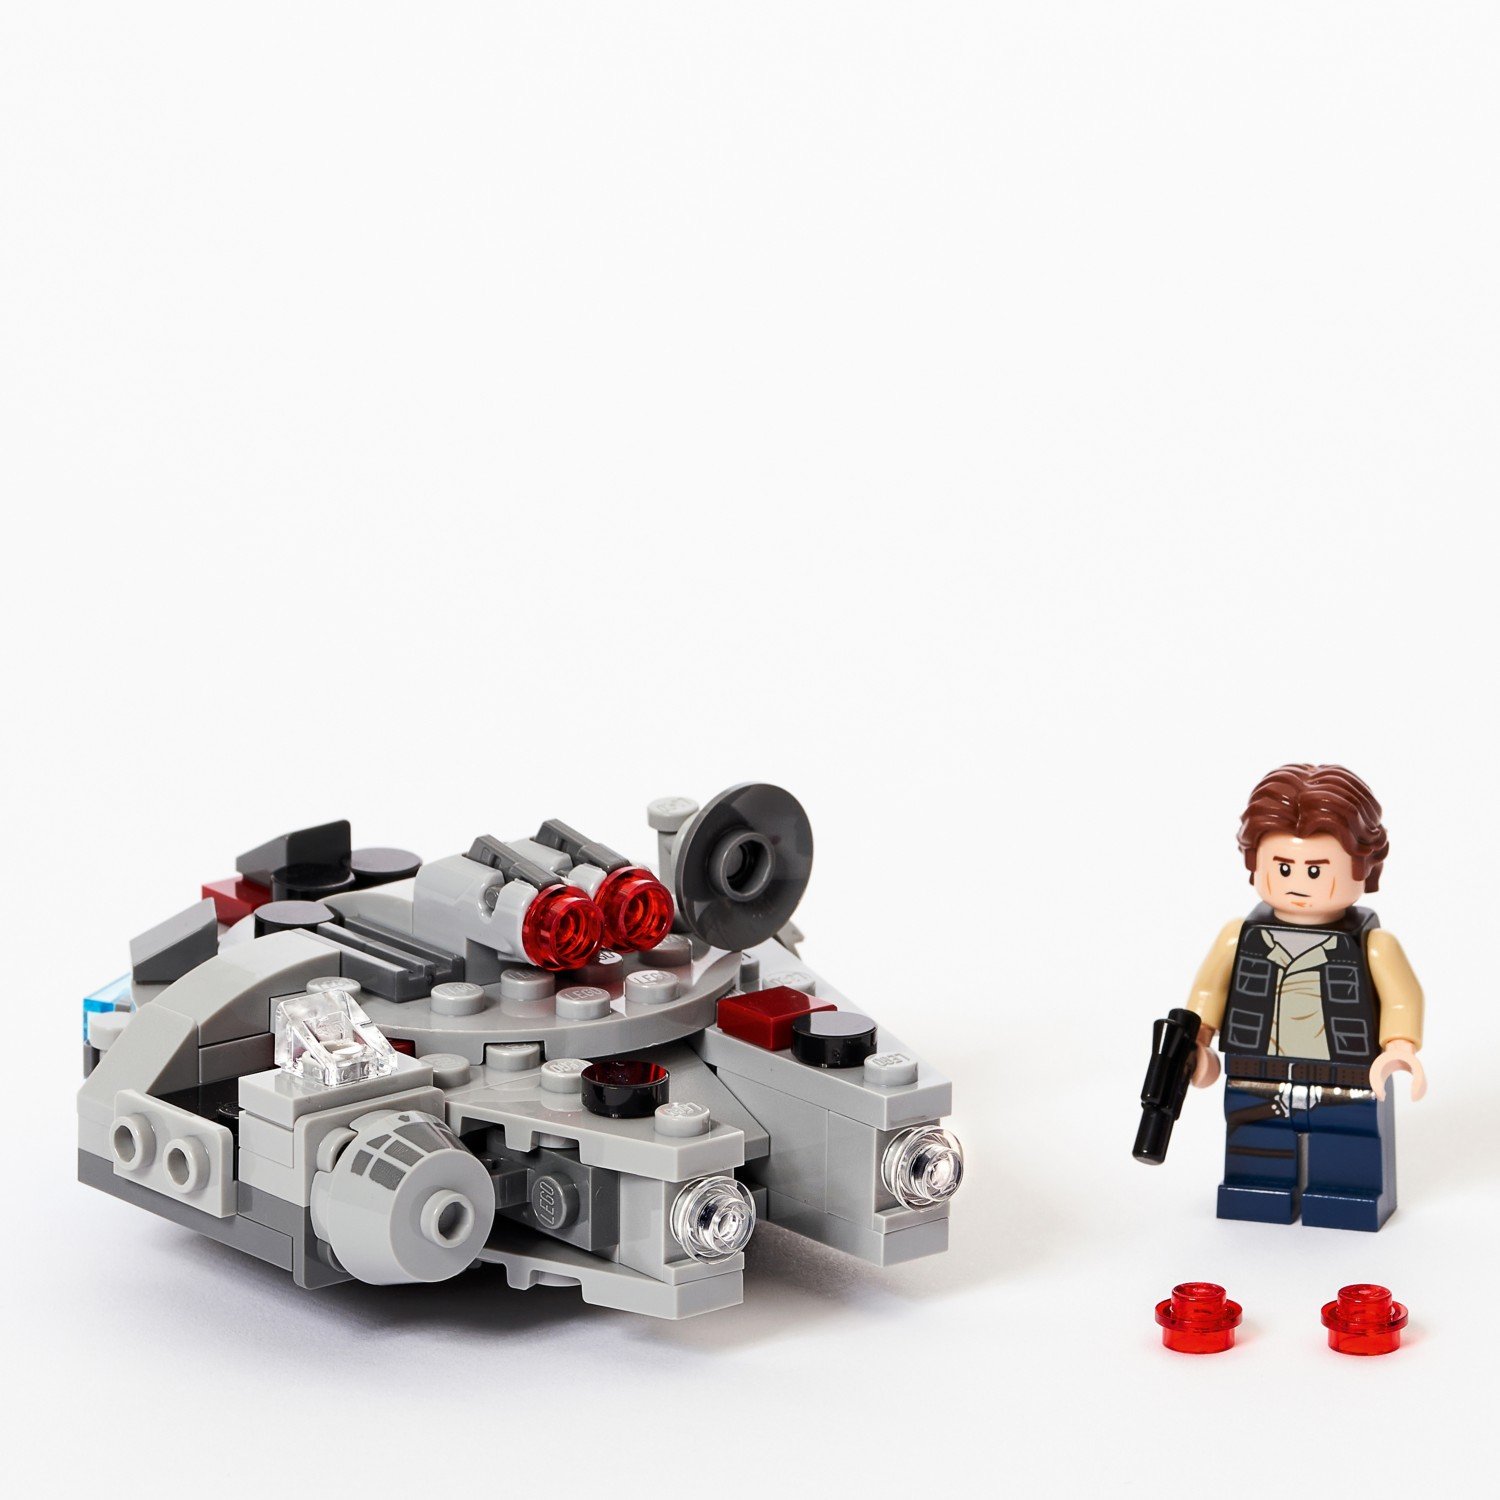 Конструктор LEGO Star Wars 75295 Микрофайтеры: «Сокол тысячелетия»